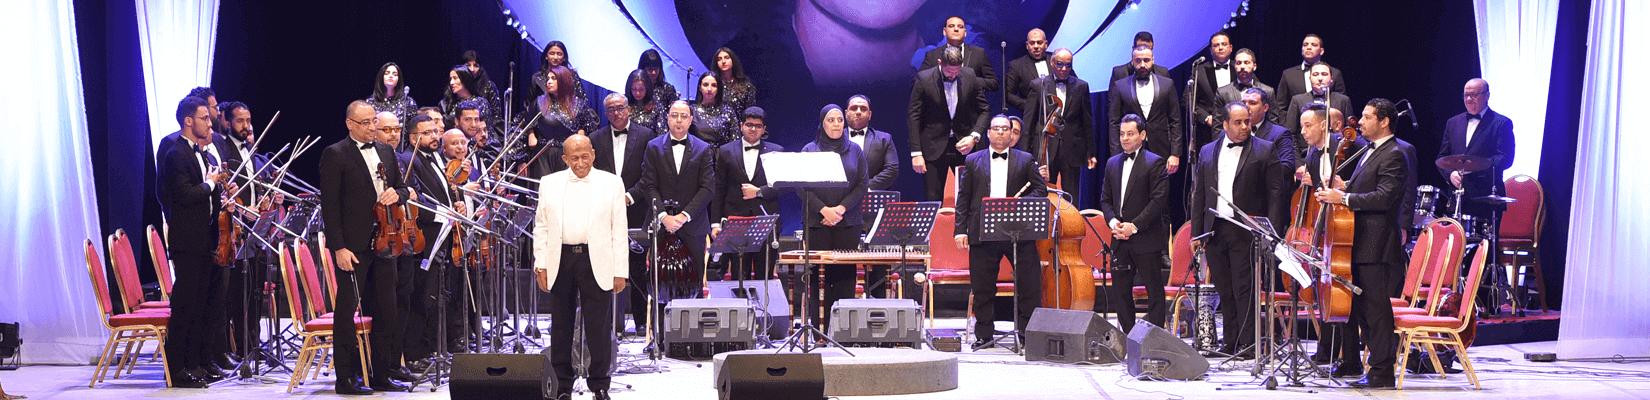 فرقة أوبرا الإسكندرية للموسيقى والغناء العربي